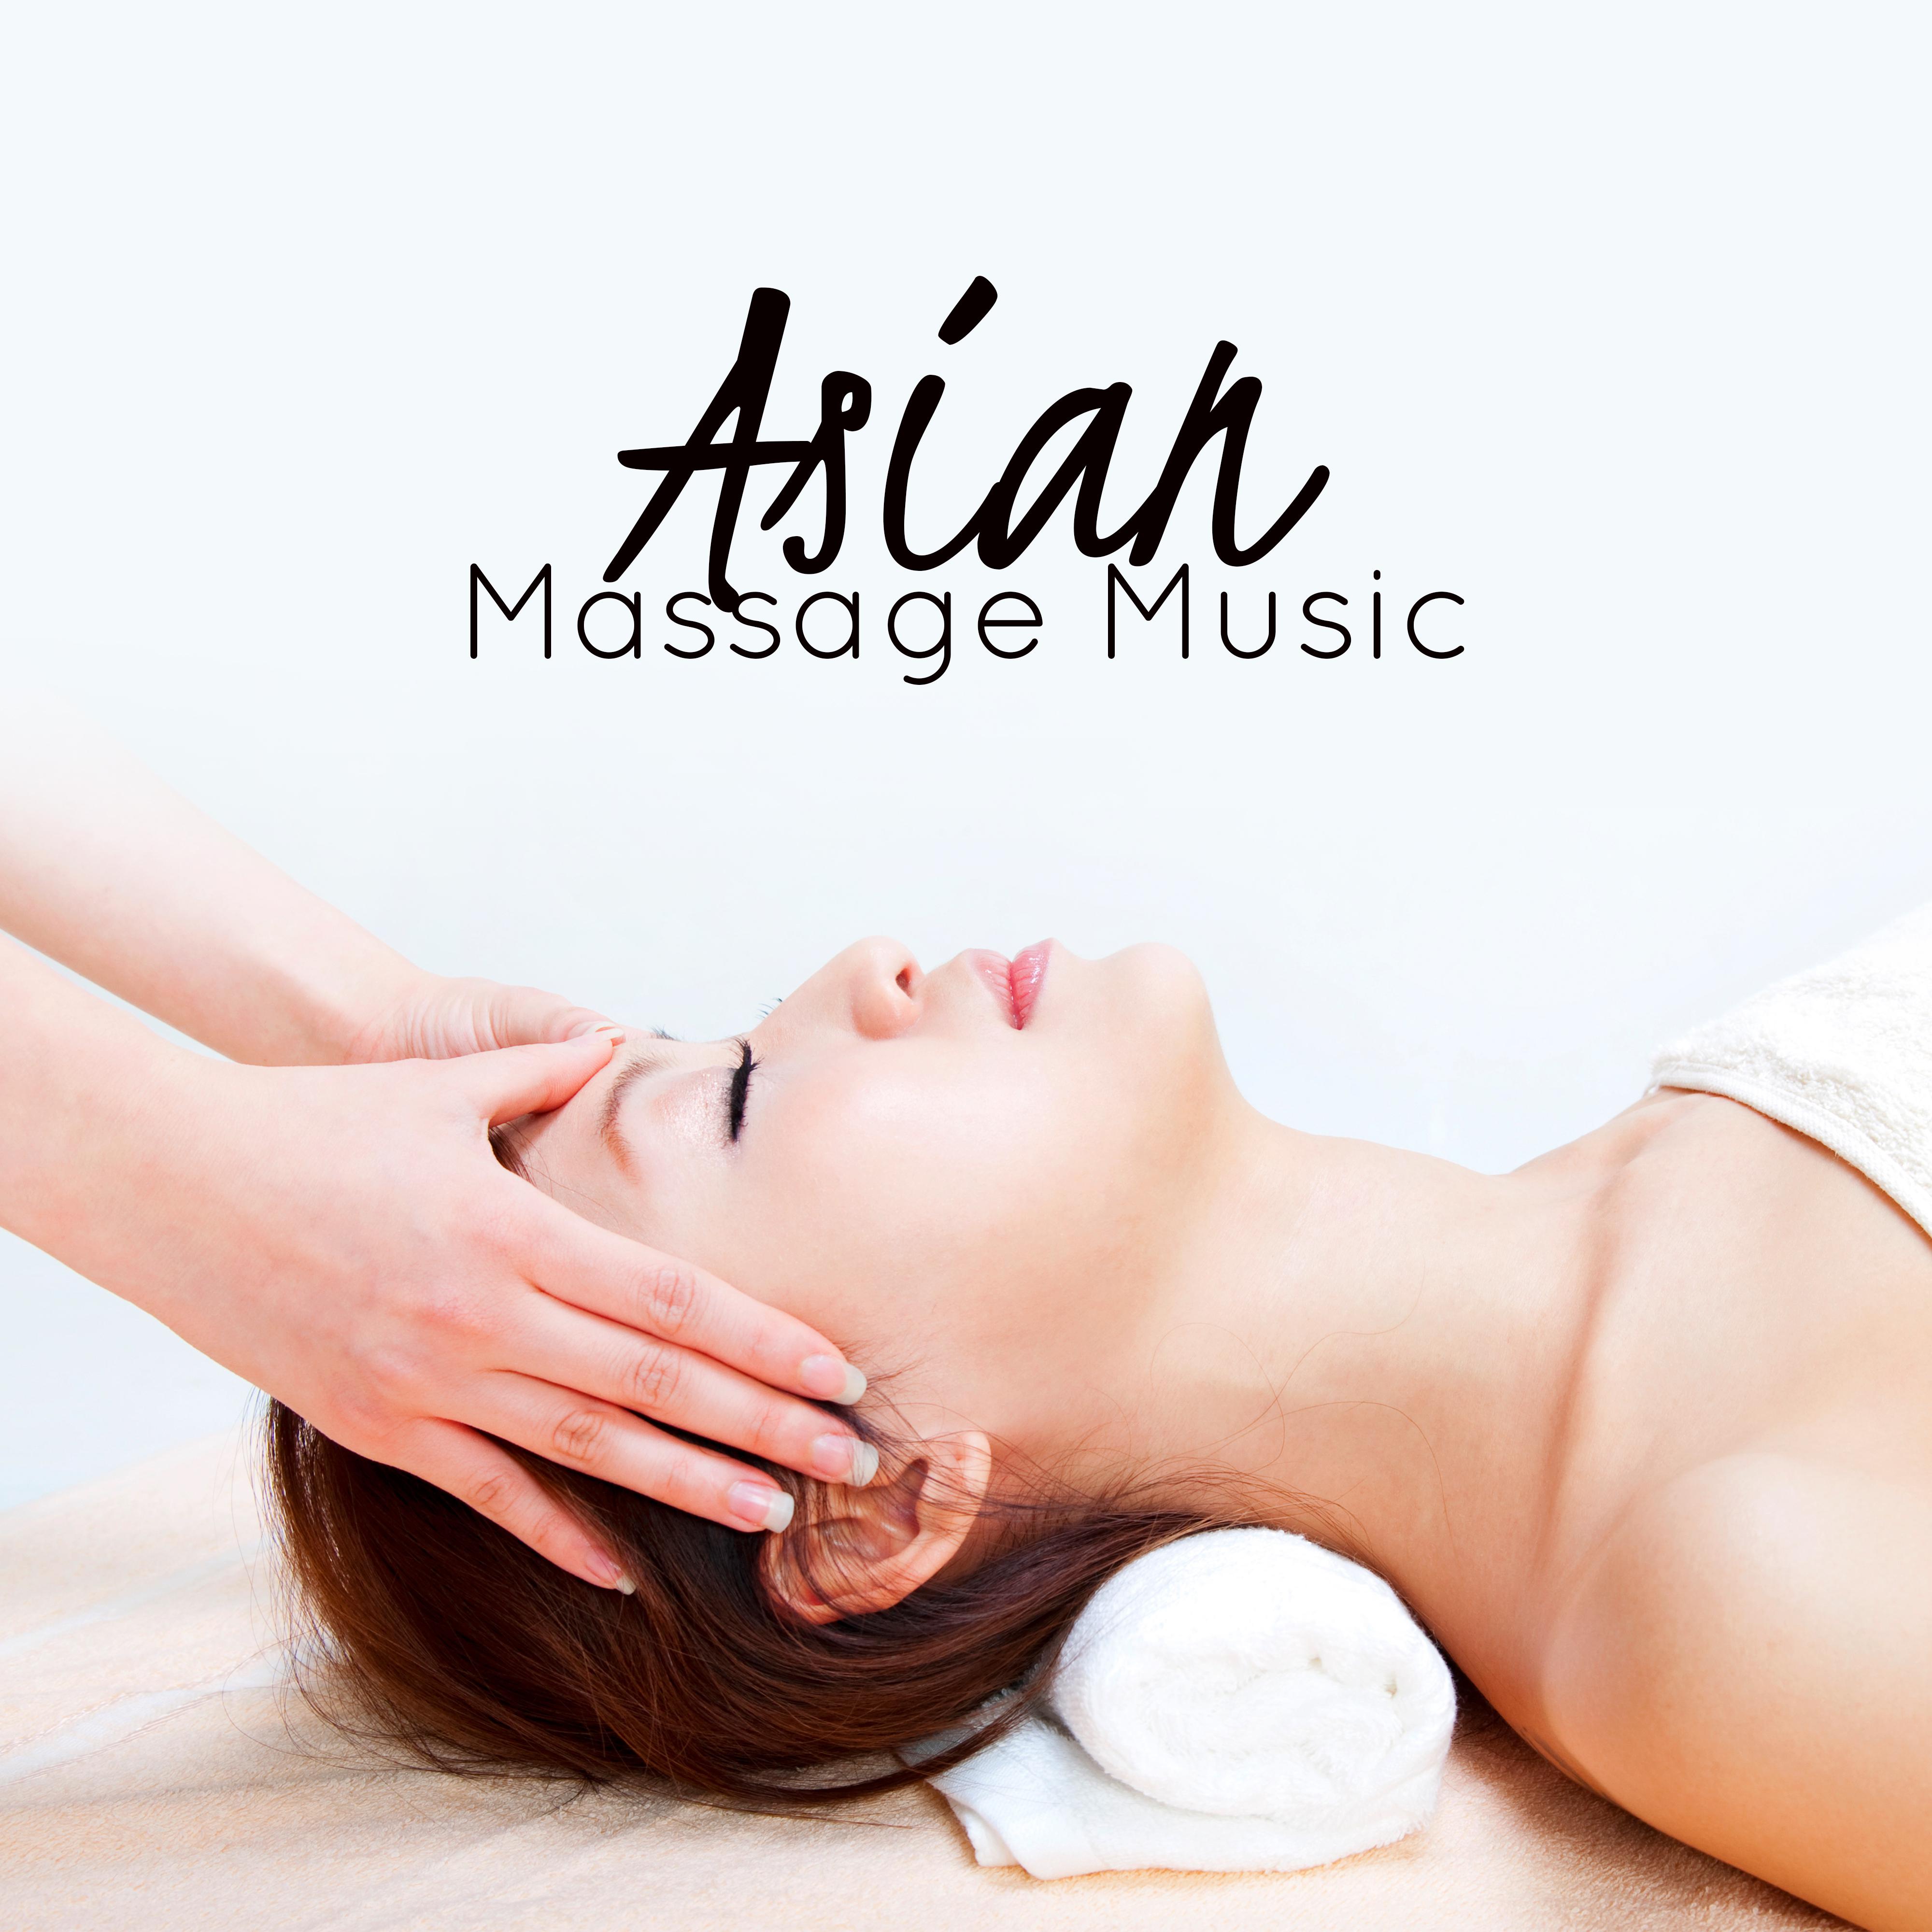 Asian Massage Music